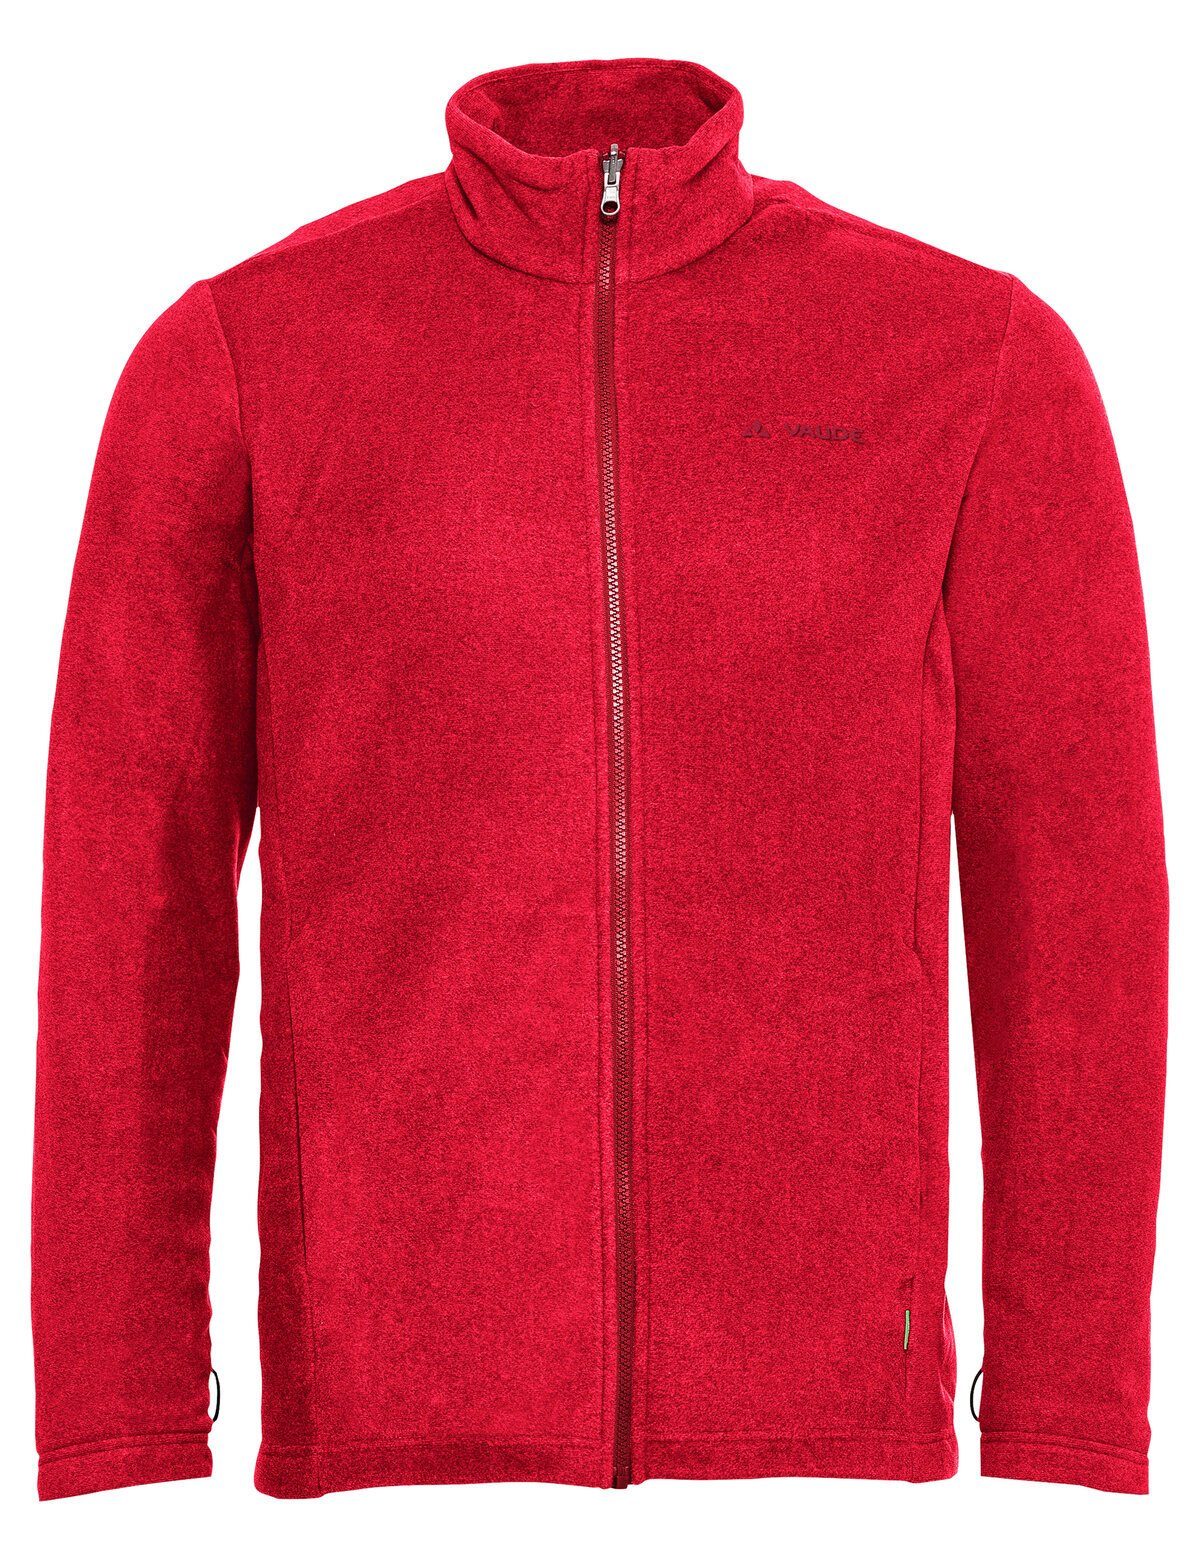 Rosemoor VAUDE Men's Doppeljacke red (2-St) Jacket 3in1